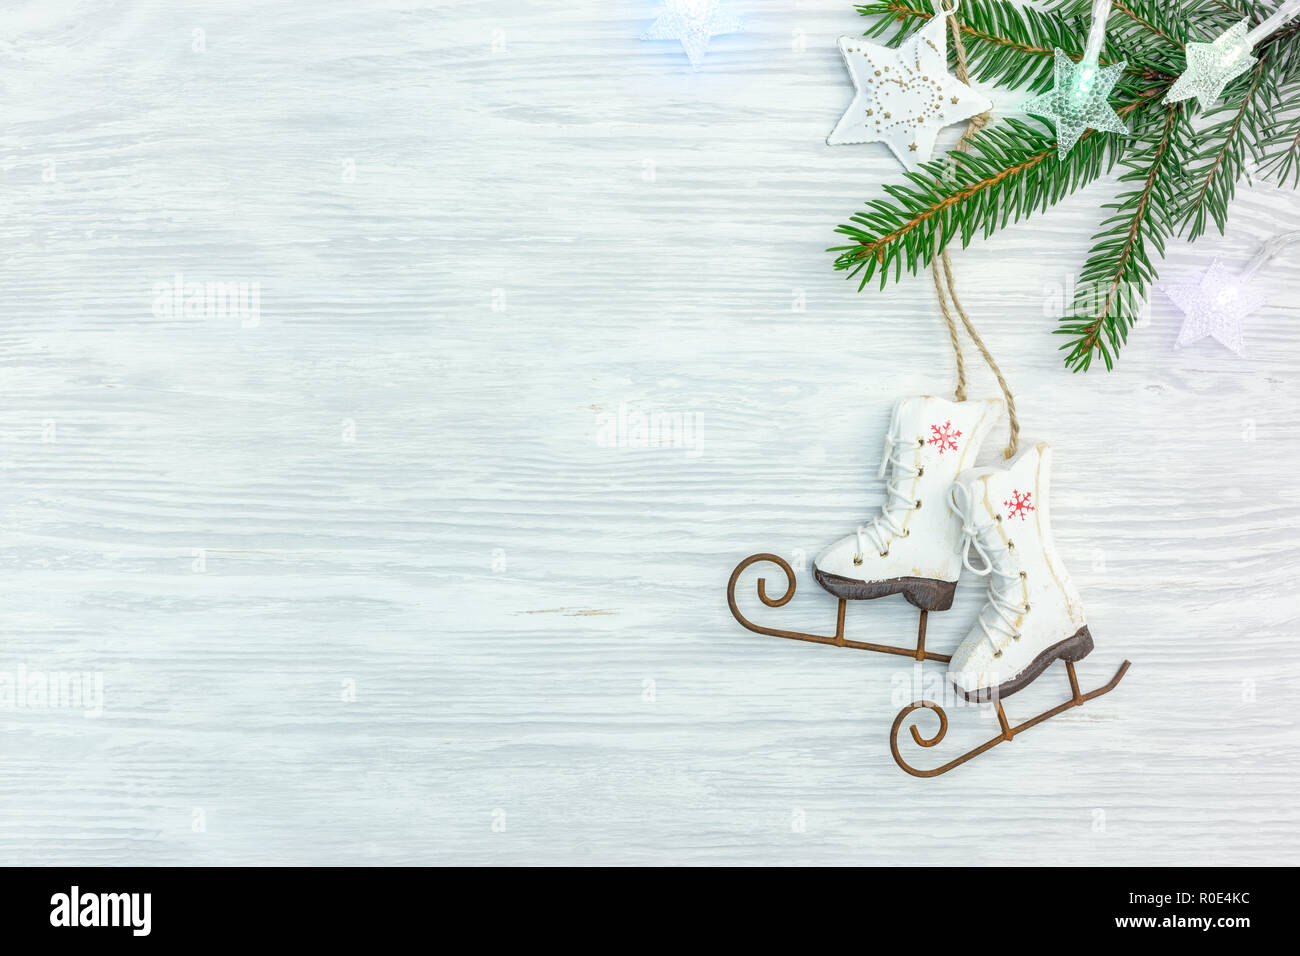 Weiß Holz- Hintergrund mit grünen Fir Tree Branch, dekorative kleine Eis scates und Weihnachtsbeleuchtung. Flach Stockfoto